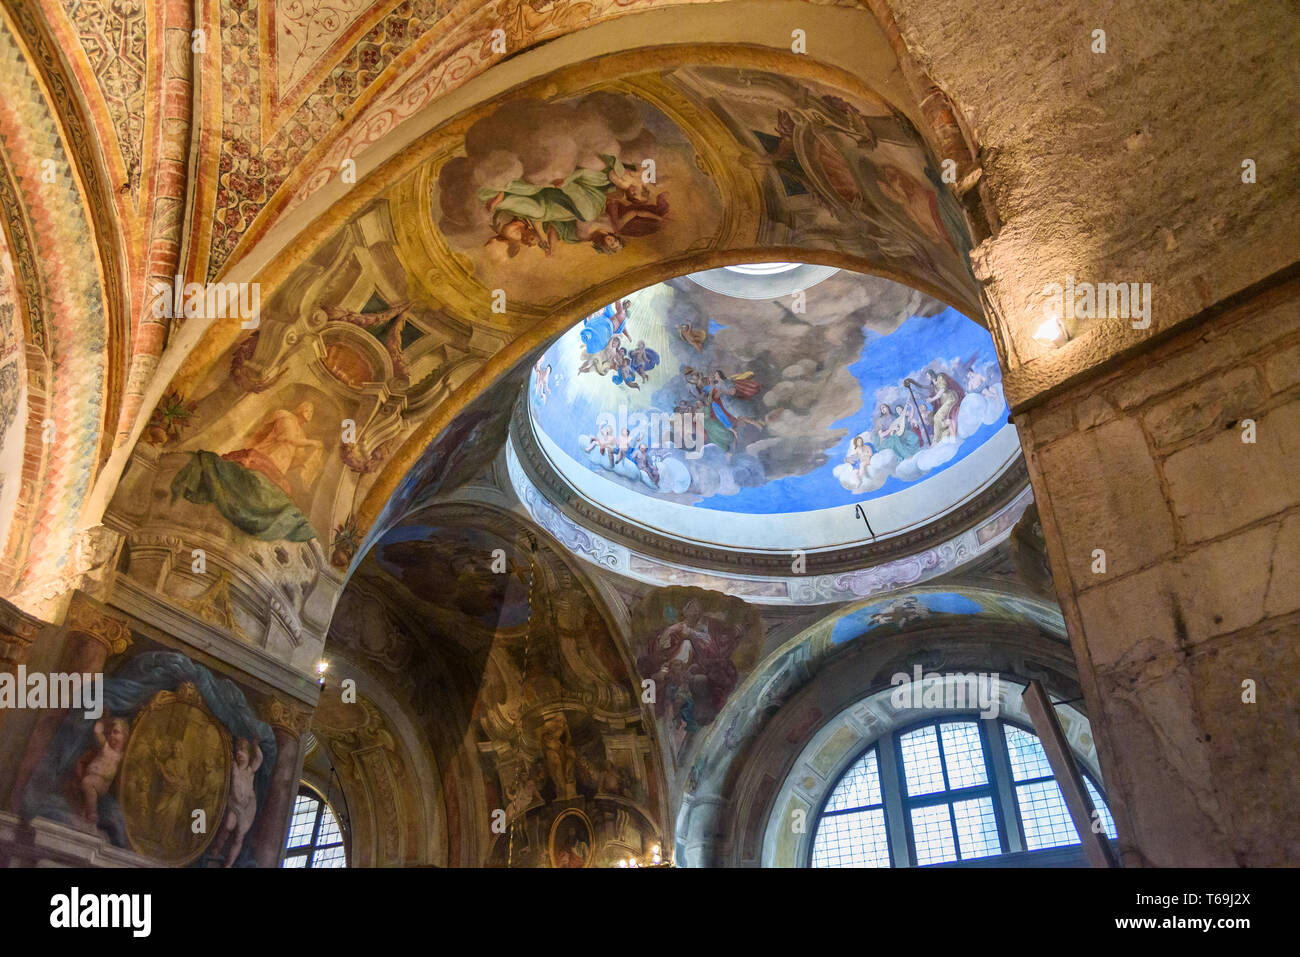 Brescia, Italia - 21 de octubre de 2018: Interior del Duomo Vecchio o Catedral Vieja, Concattedrale invernale di Santa Maria Assunta Foto de stock